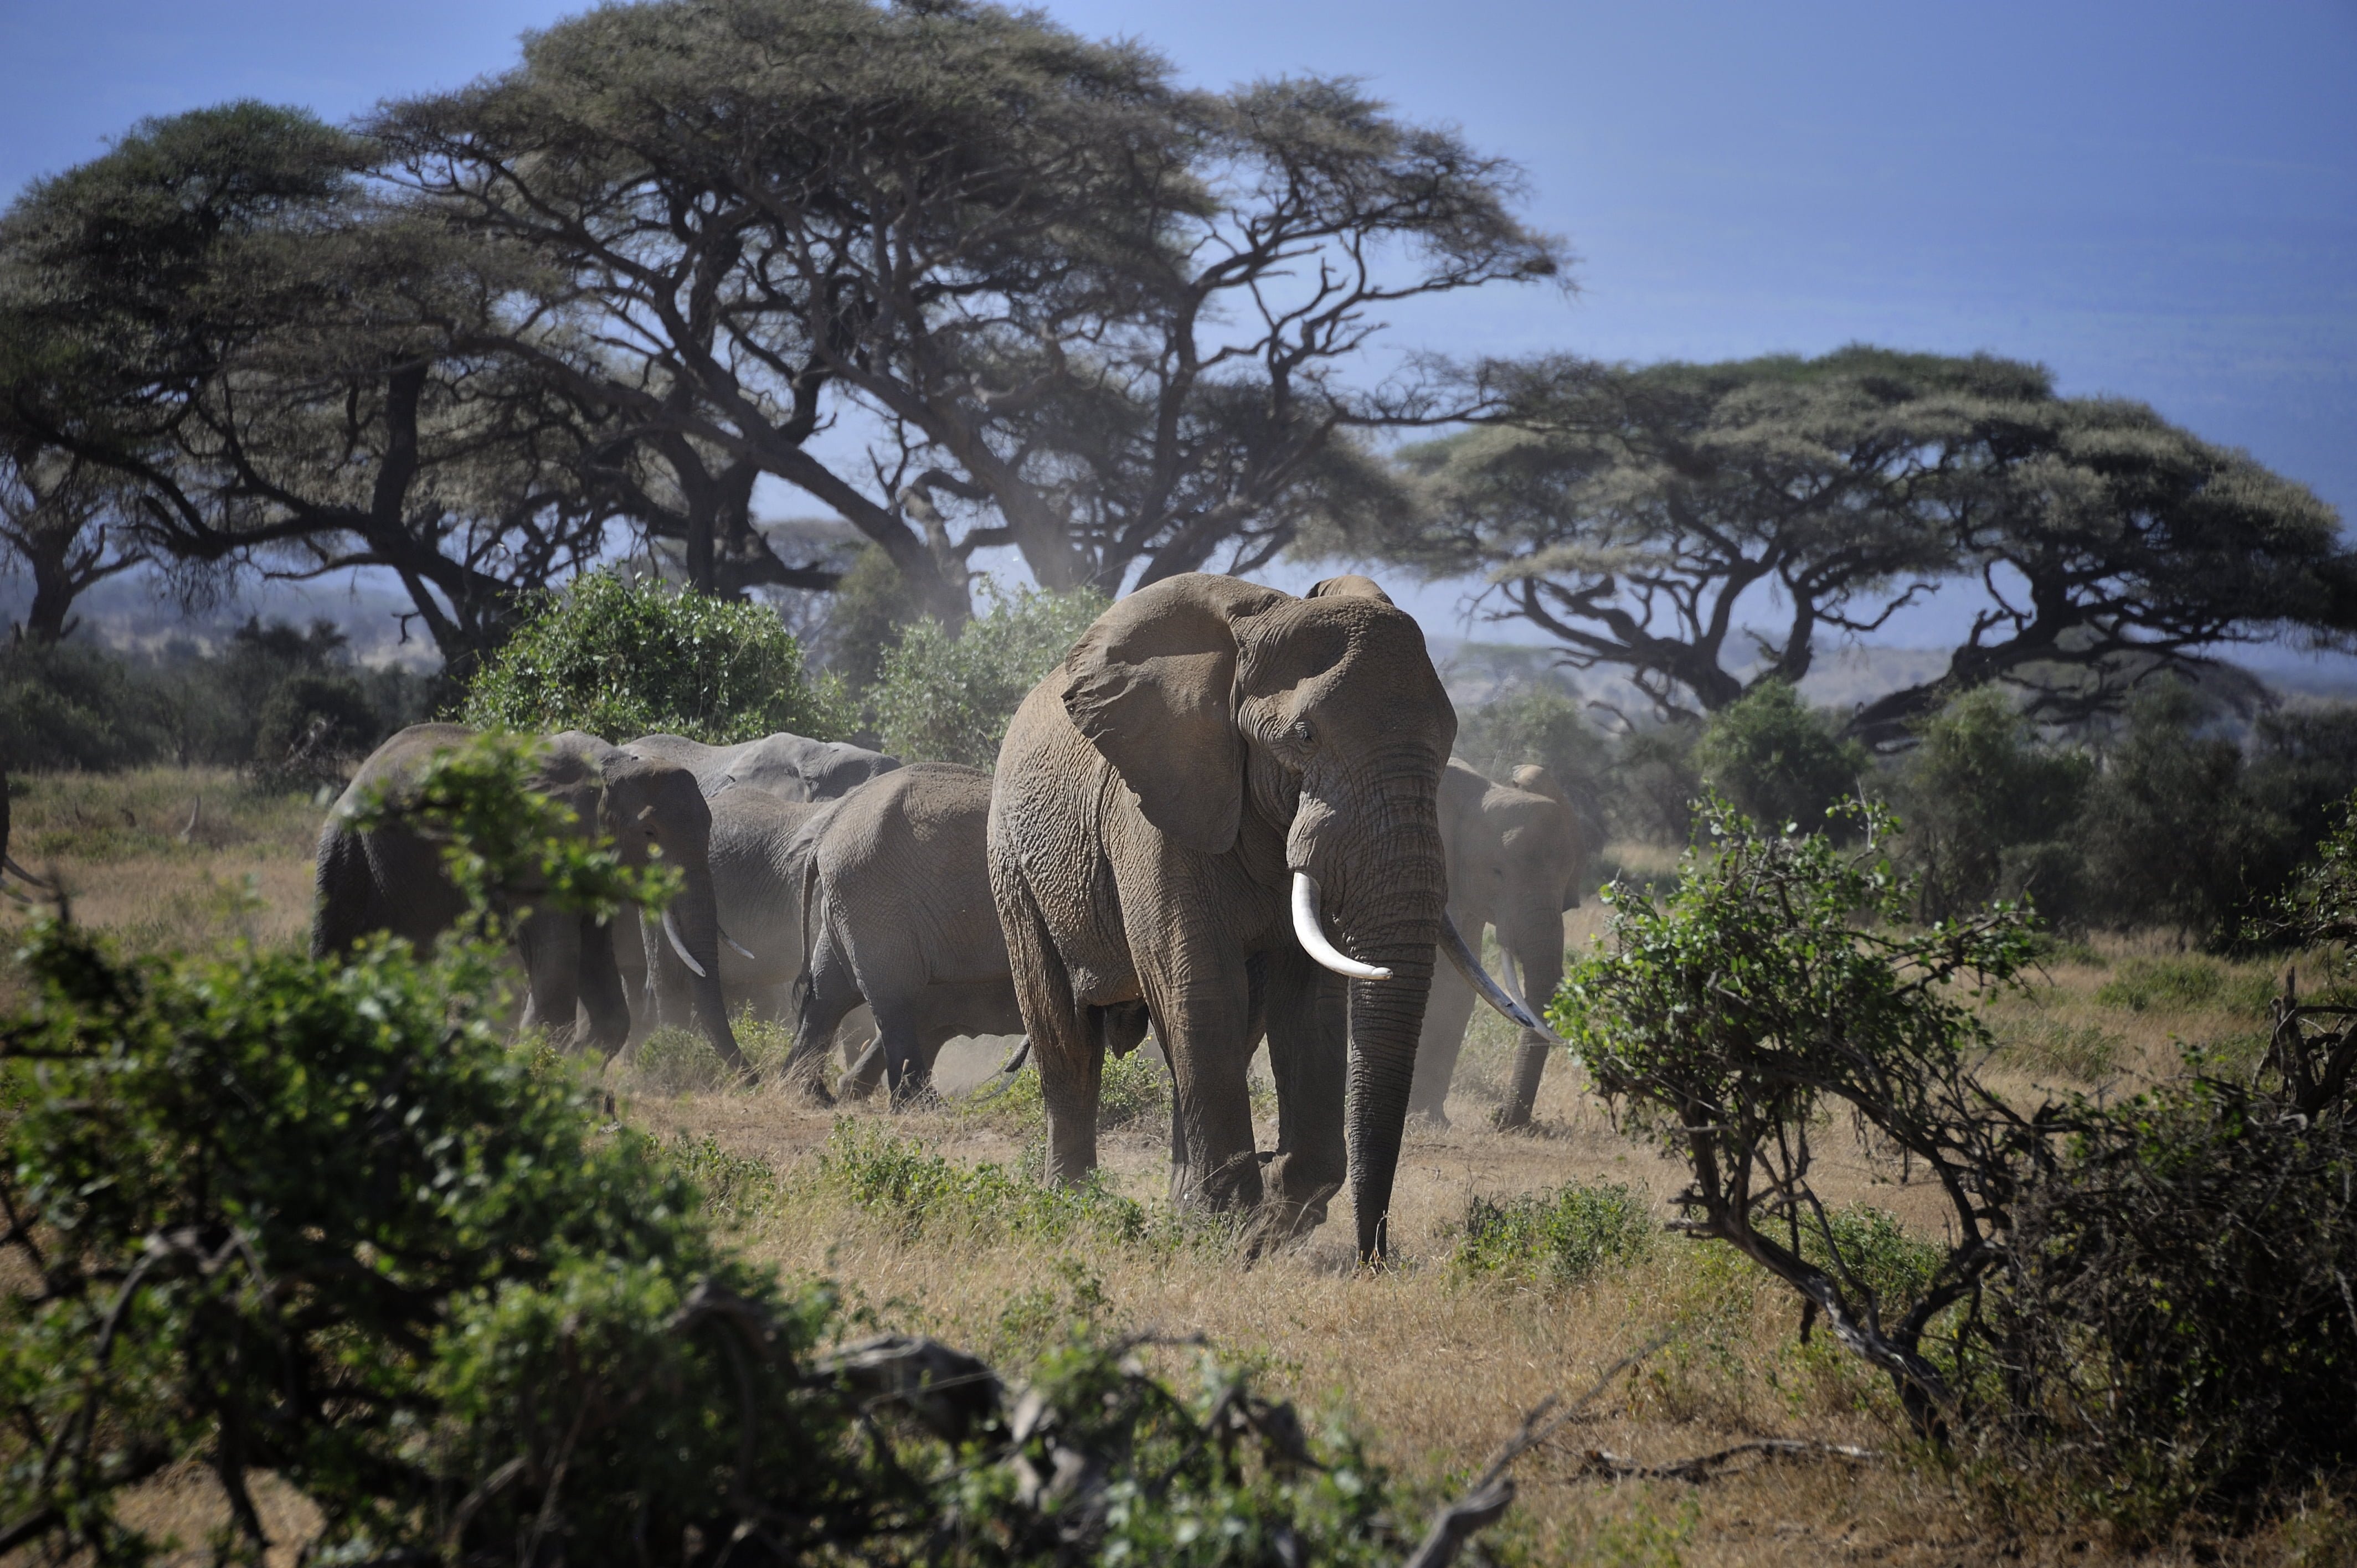 People and wildlife. Национальный парк Амбосели. Амбосели национальный парк Африки. Амбосели Кения. Национальный парк Найроби в Африке.